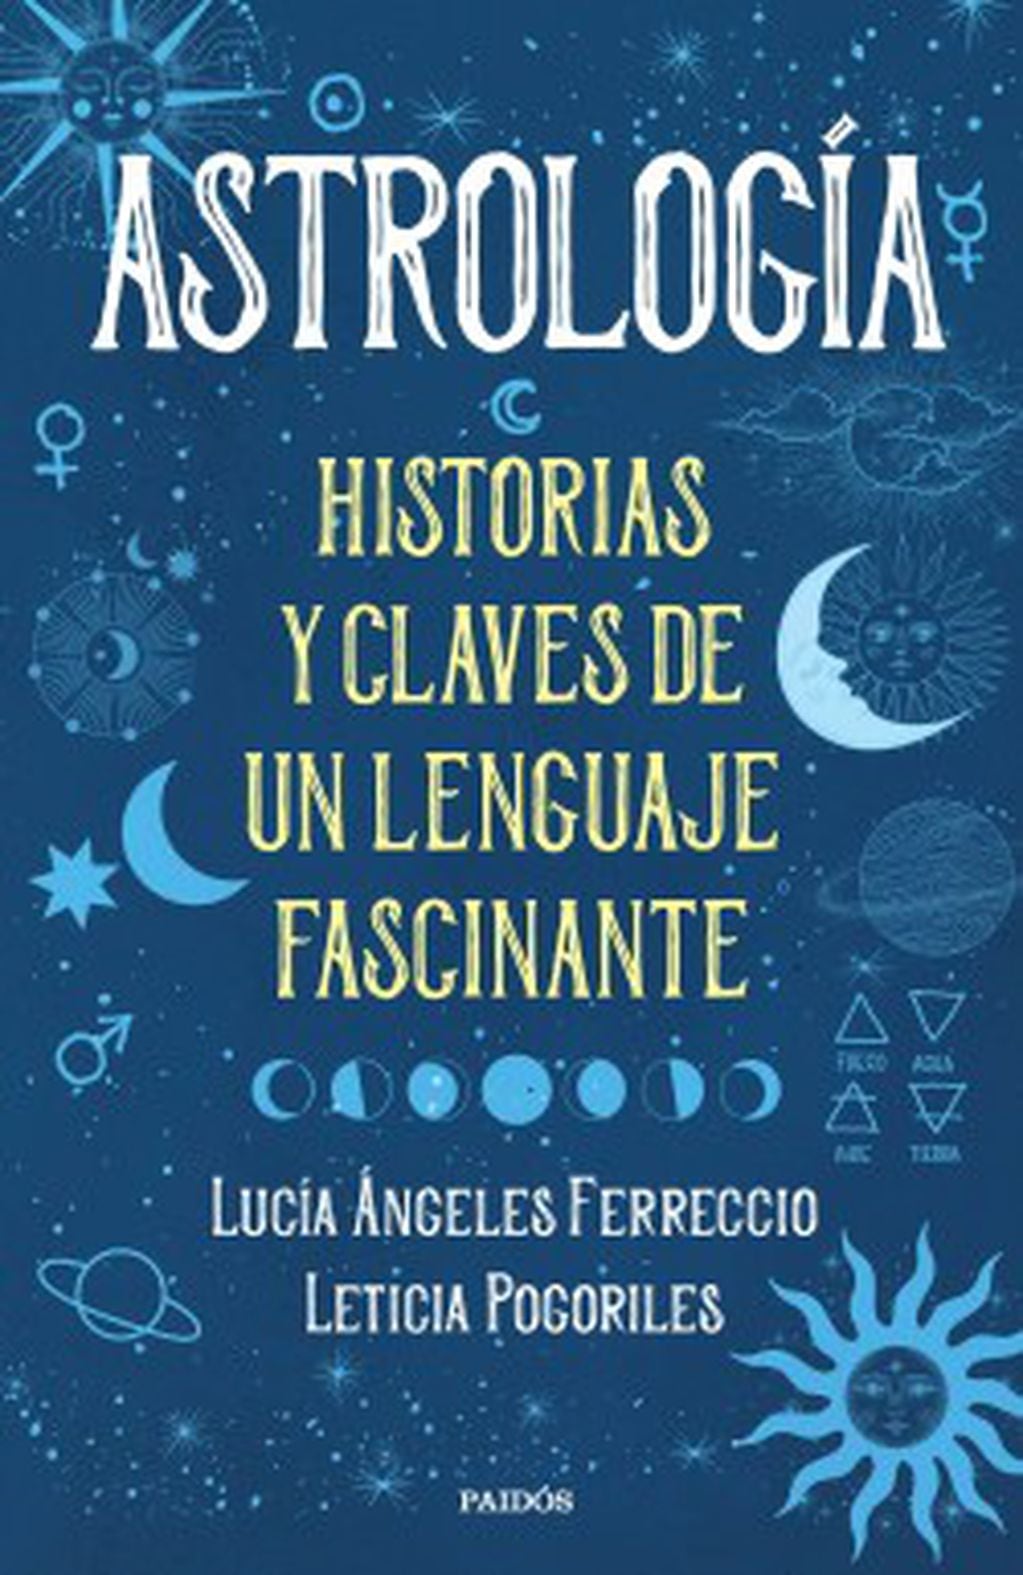 El libro de las astrólogas que aclara de forma simple todo lo que necesitás saber sobre la astrología.